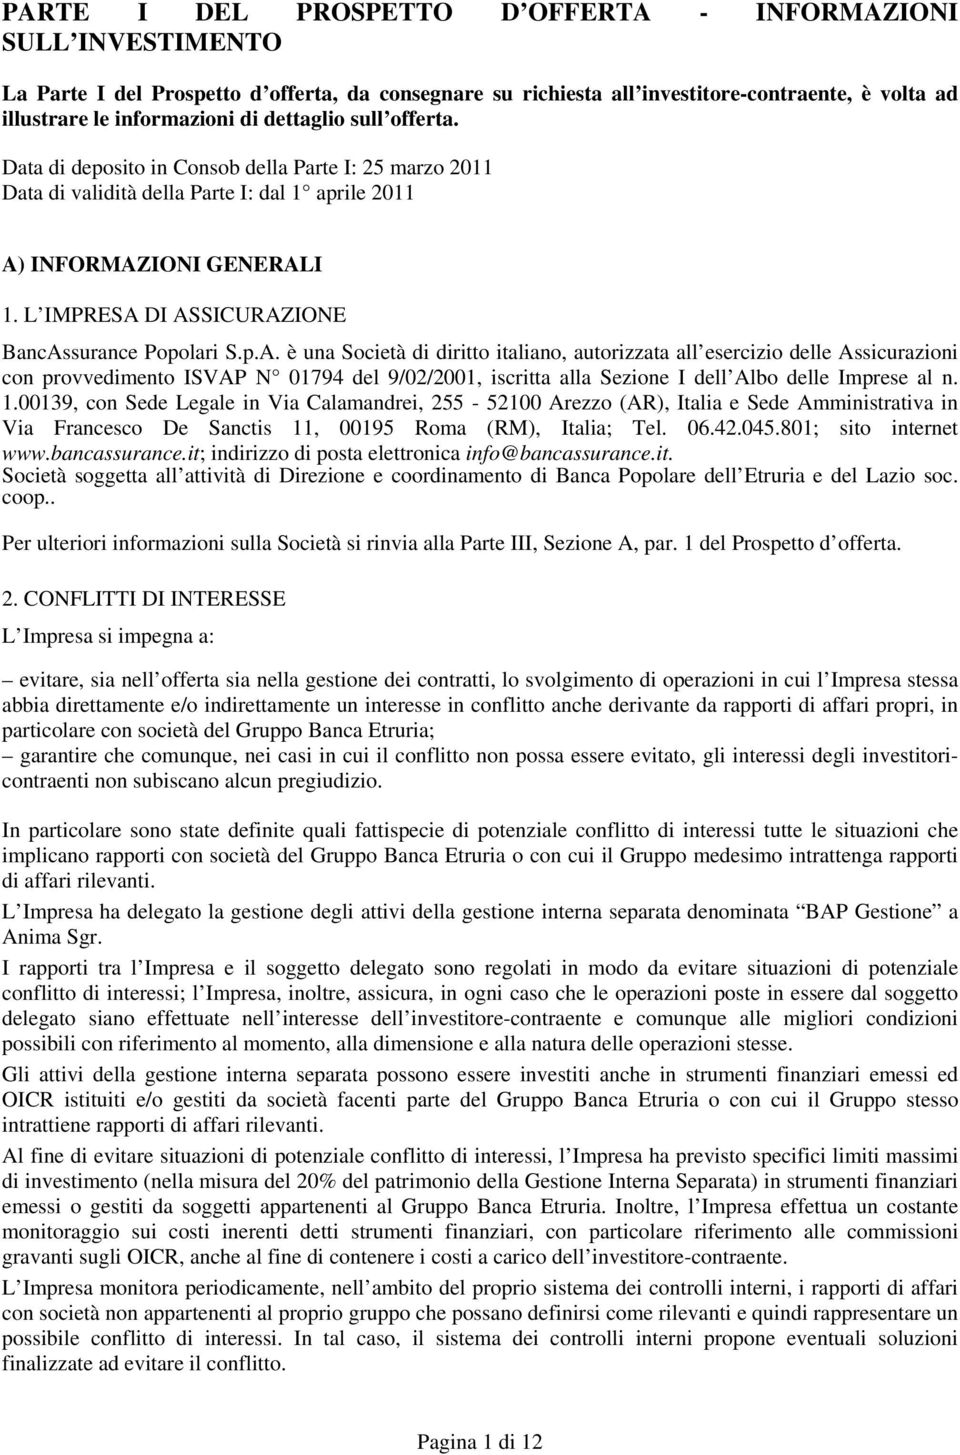 L IMPRESA DI ASSICURAZIONE BancAssurance Popolari S.p.A. è una Società di diritto italiano, autorizzata all esercizio delle Assicurazioni con provvedimento ISVAP N 01794 del 9/02/2001, iscritta alla Sezione I dell Albo delle Imprese al n.